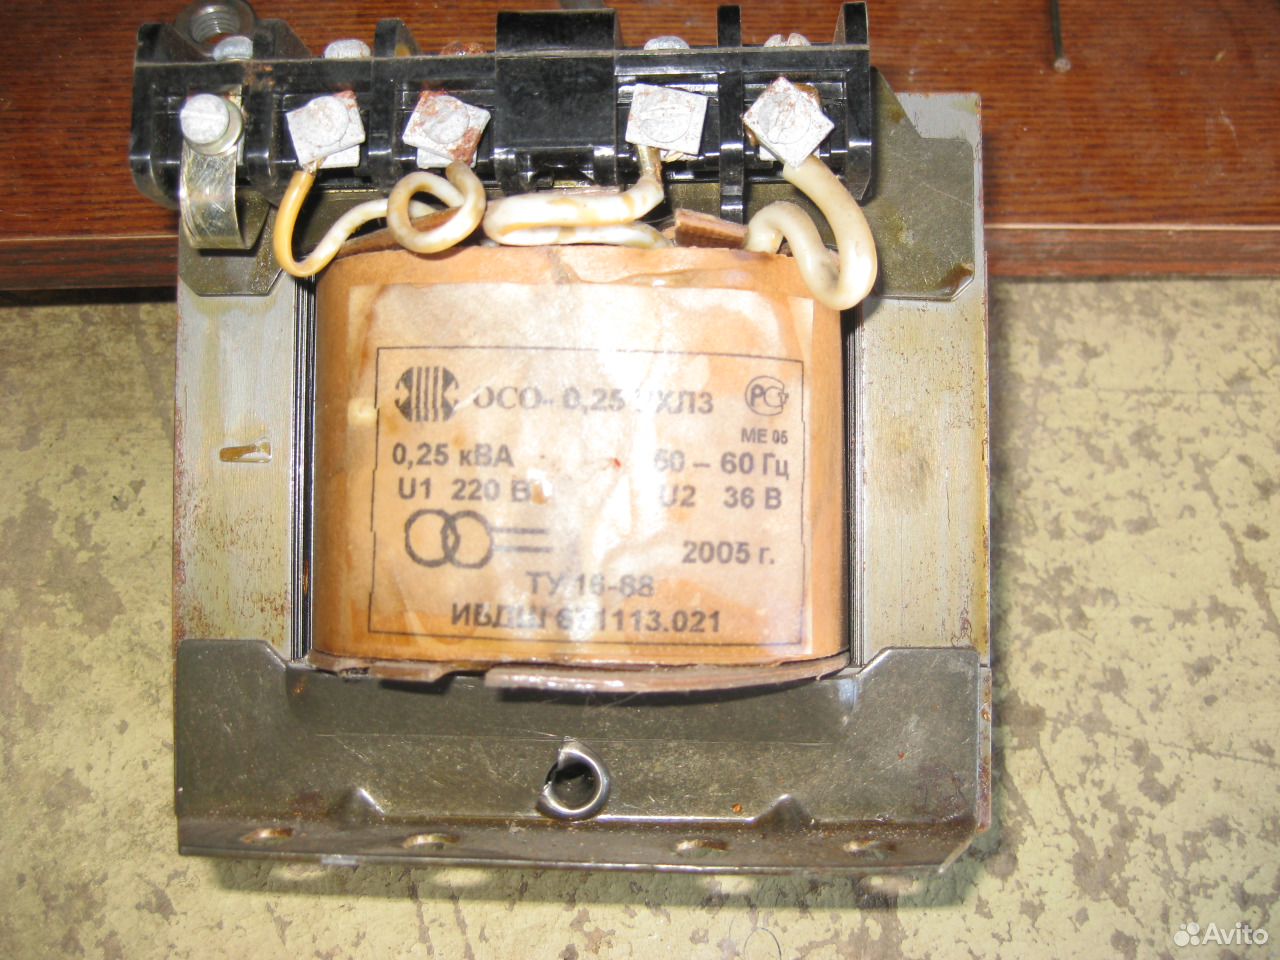 Понижающий трансформатор на 36 вольт. Преобразователь напряжения 220 в 36 вольт. Трансформатор 220 на 36 вольт. Трансформатор понижающий 220/36 СССР. Понижающий трансформатор штиль.